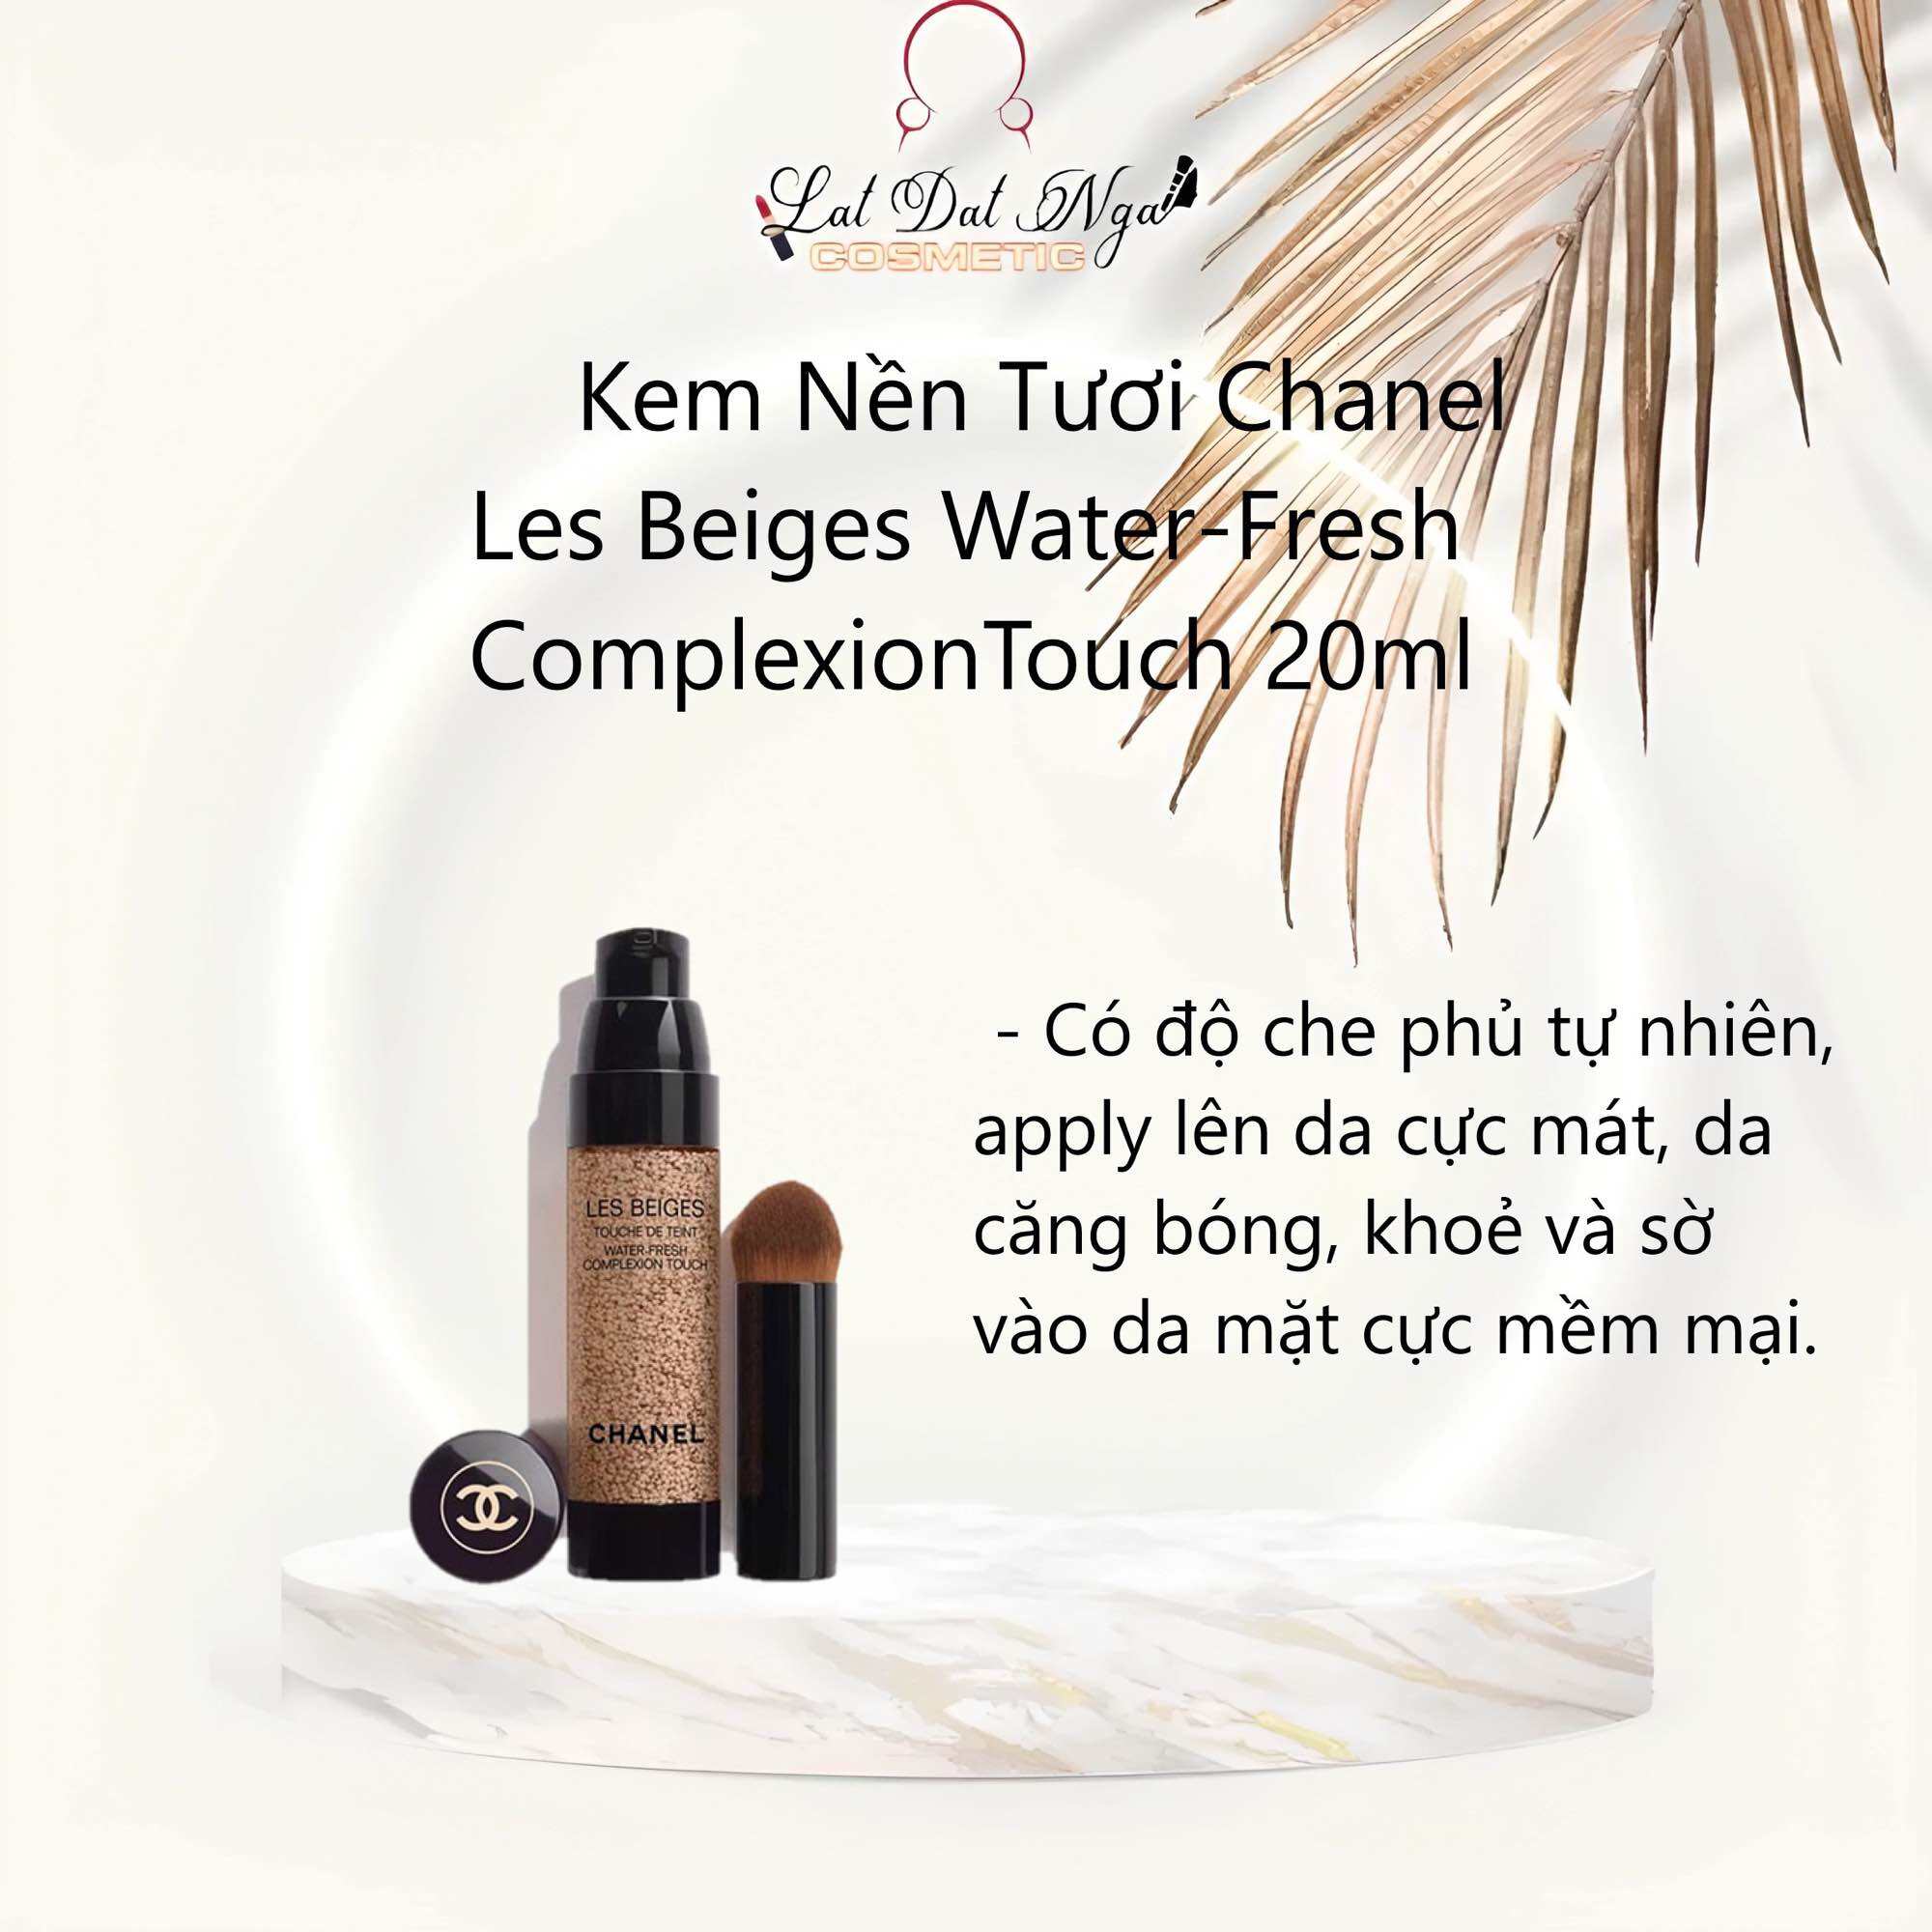 Kem Nền Chanel Les Beiges Healthy Glow Foundation Hydration And Longwear  30ml  Store Mỹ phẩm Em xinh em đẹp